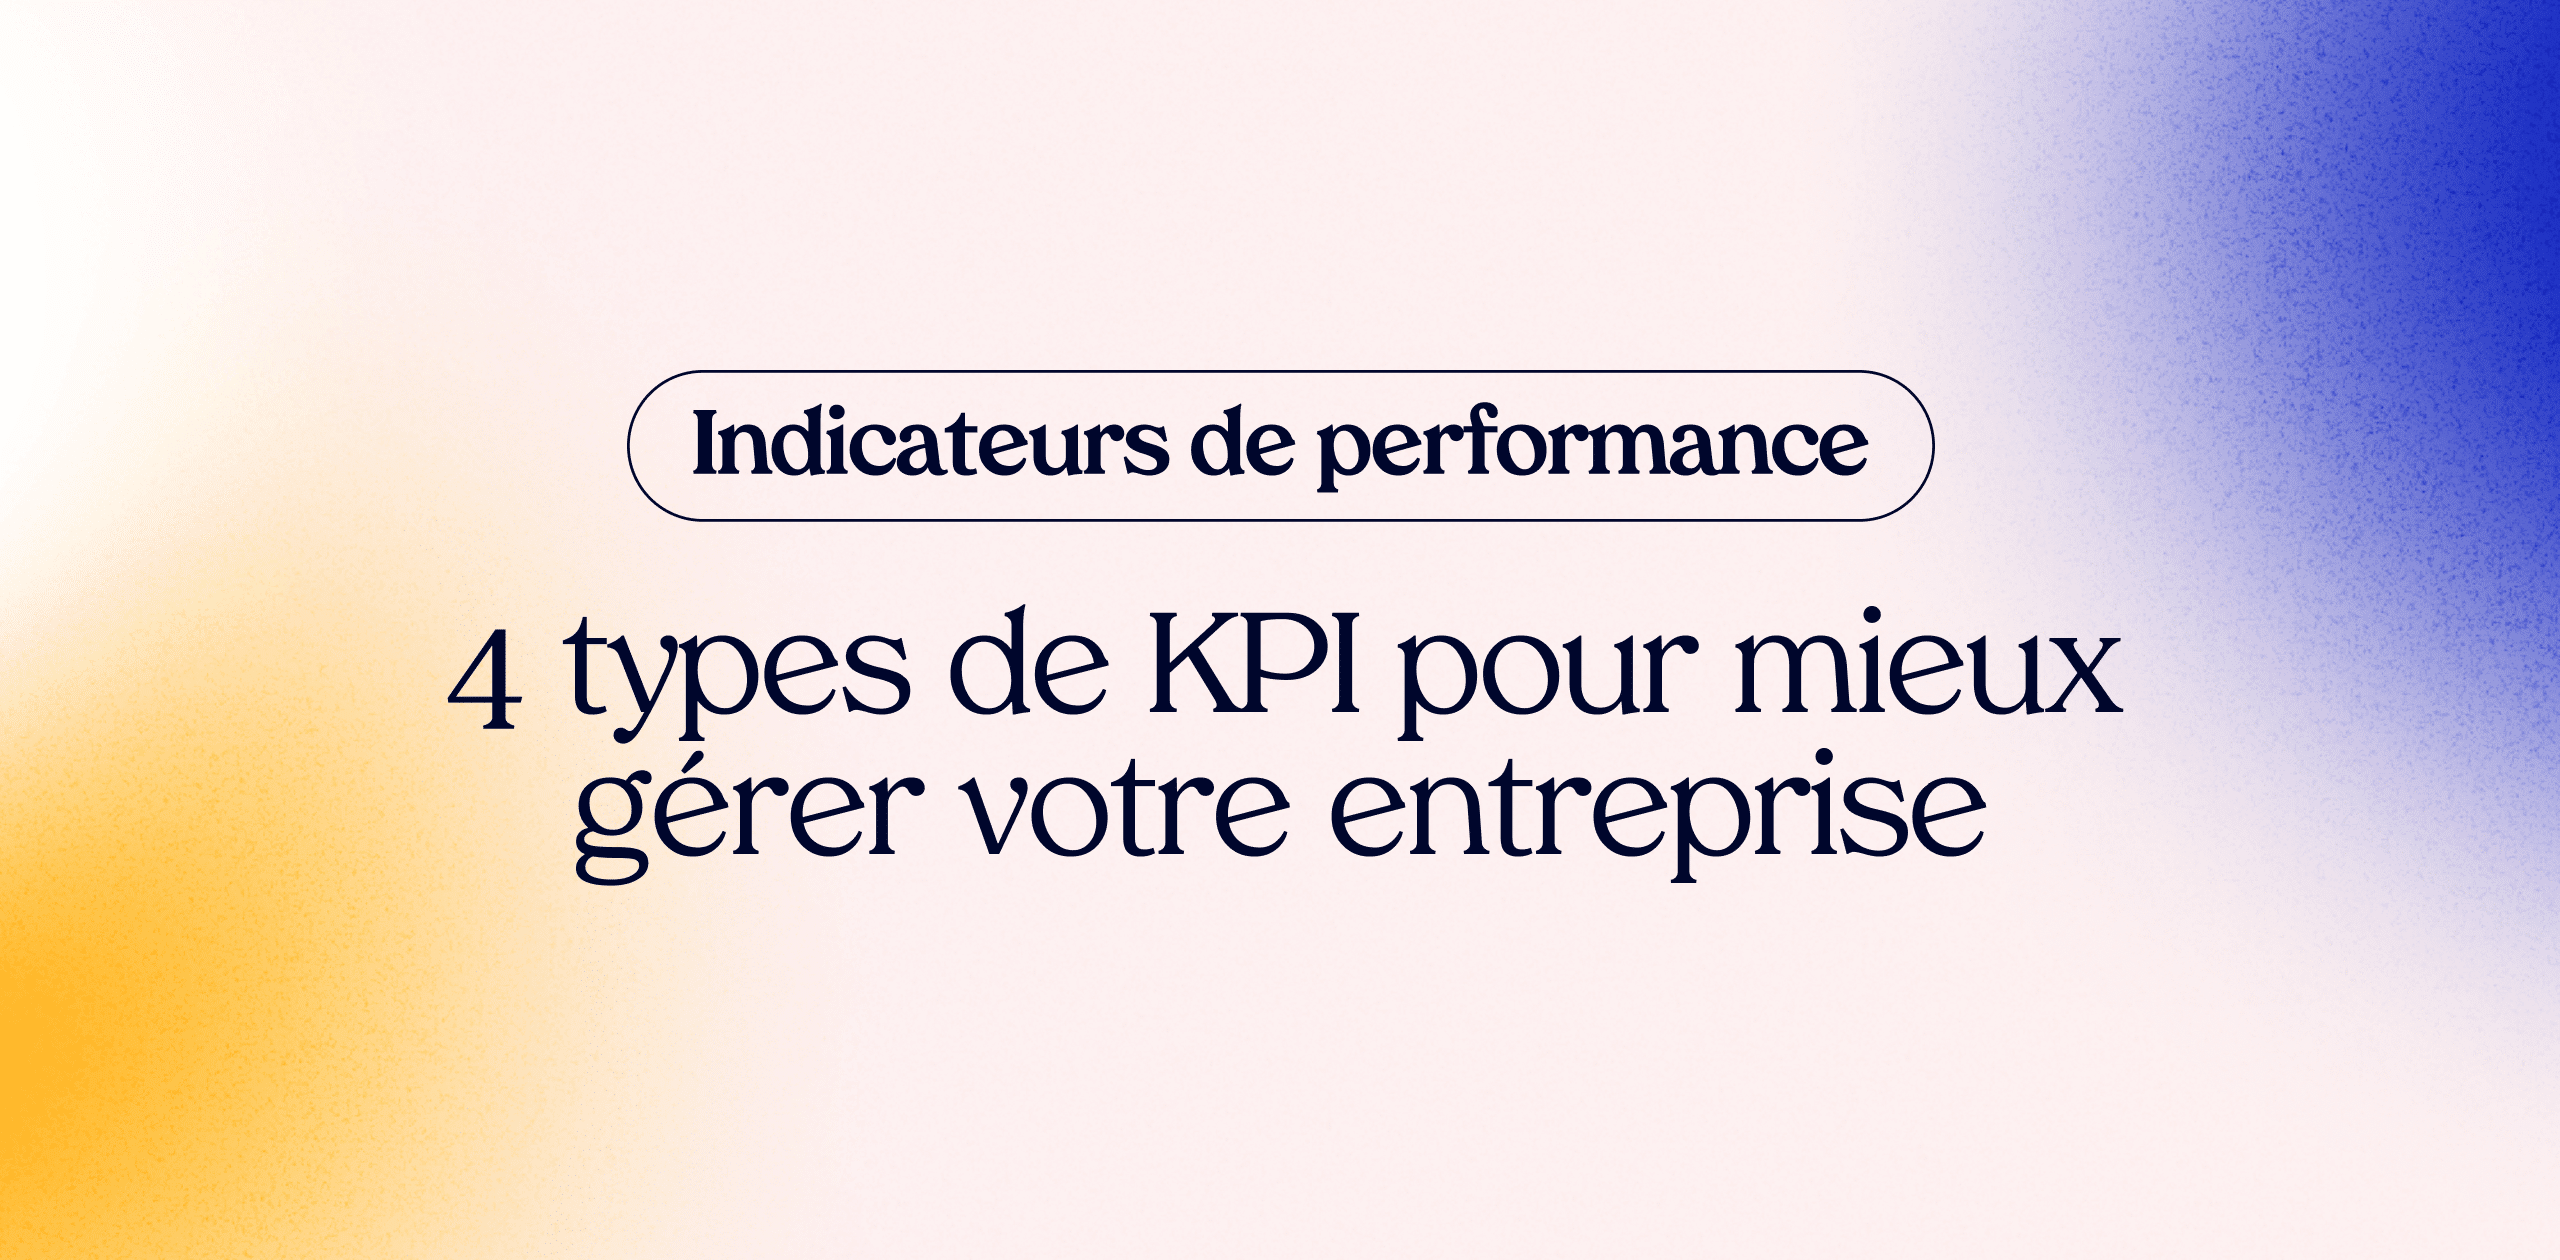 Indicateurs de performance : 4 types de KPI pour mieux gérer votre entreprise